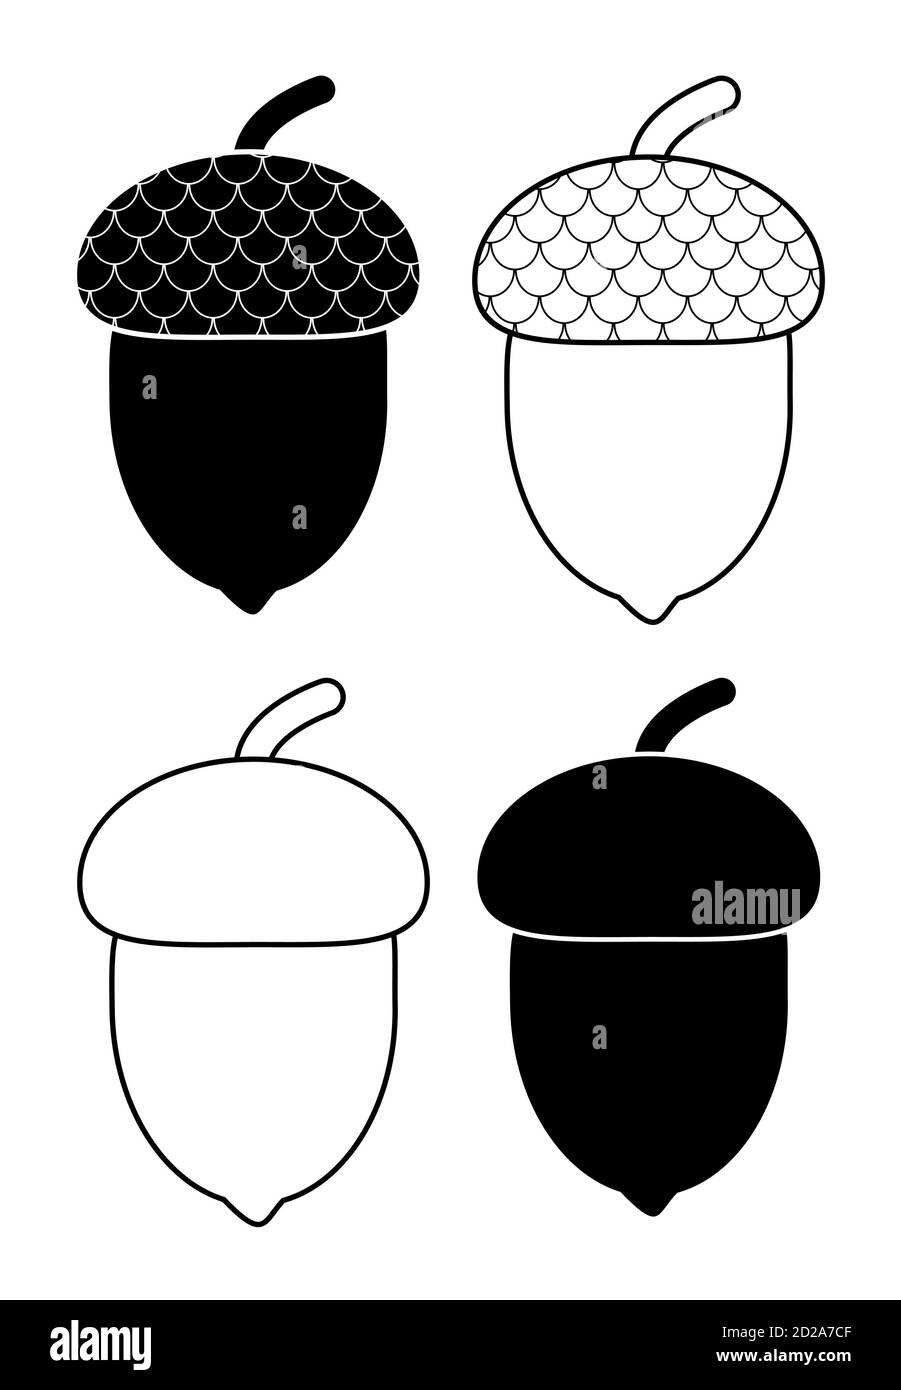 Acorn skizziert und Silhouetten herbstlichen Design-Element-Set isoliert auf weiß. Illustration von Eichenholzfrüchten mit Kappen. Eicheln aus schwarz-weißer Eiche wi Stock Vektor